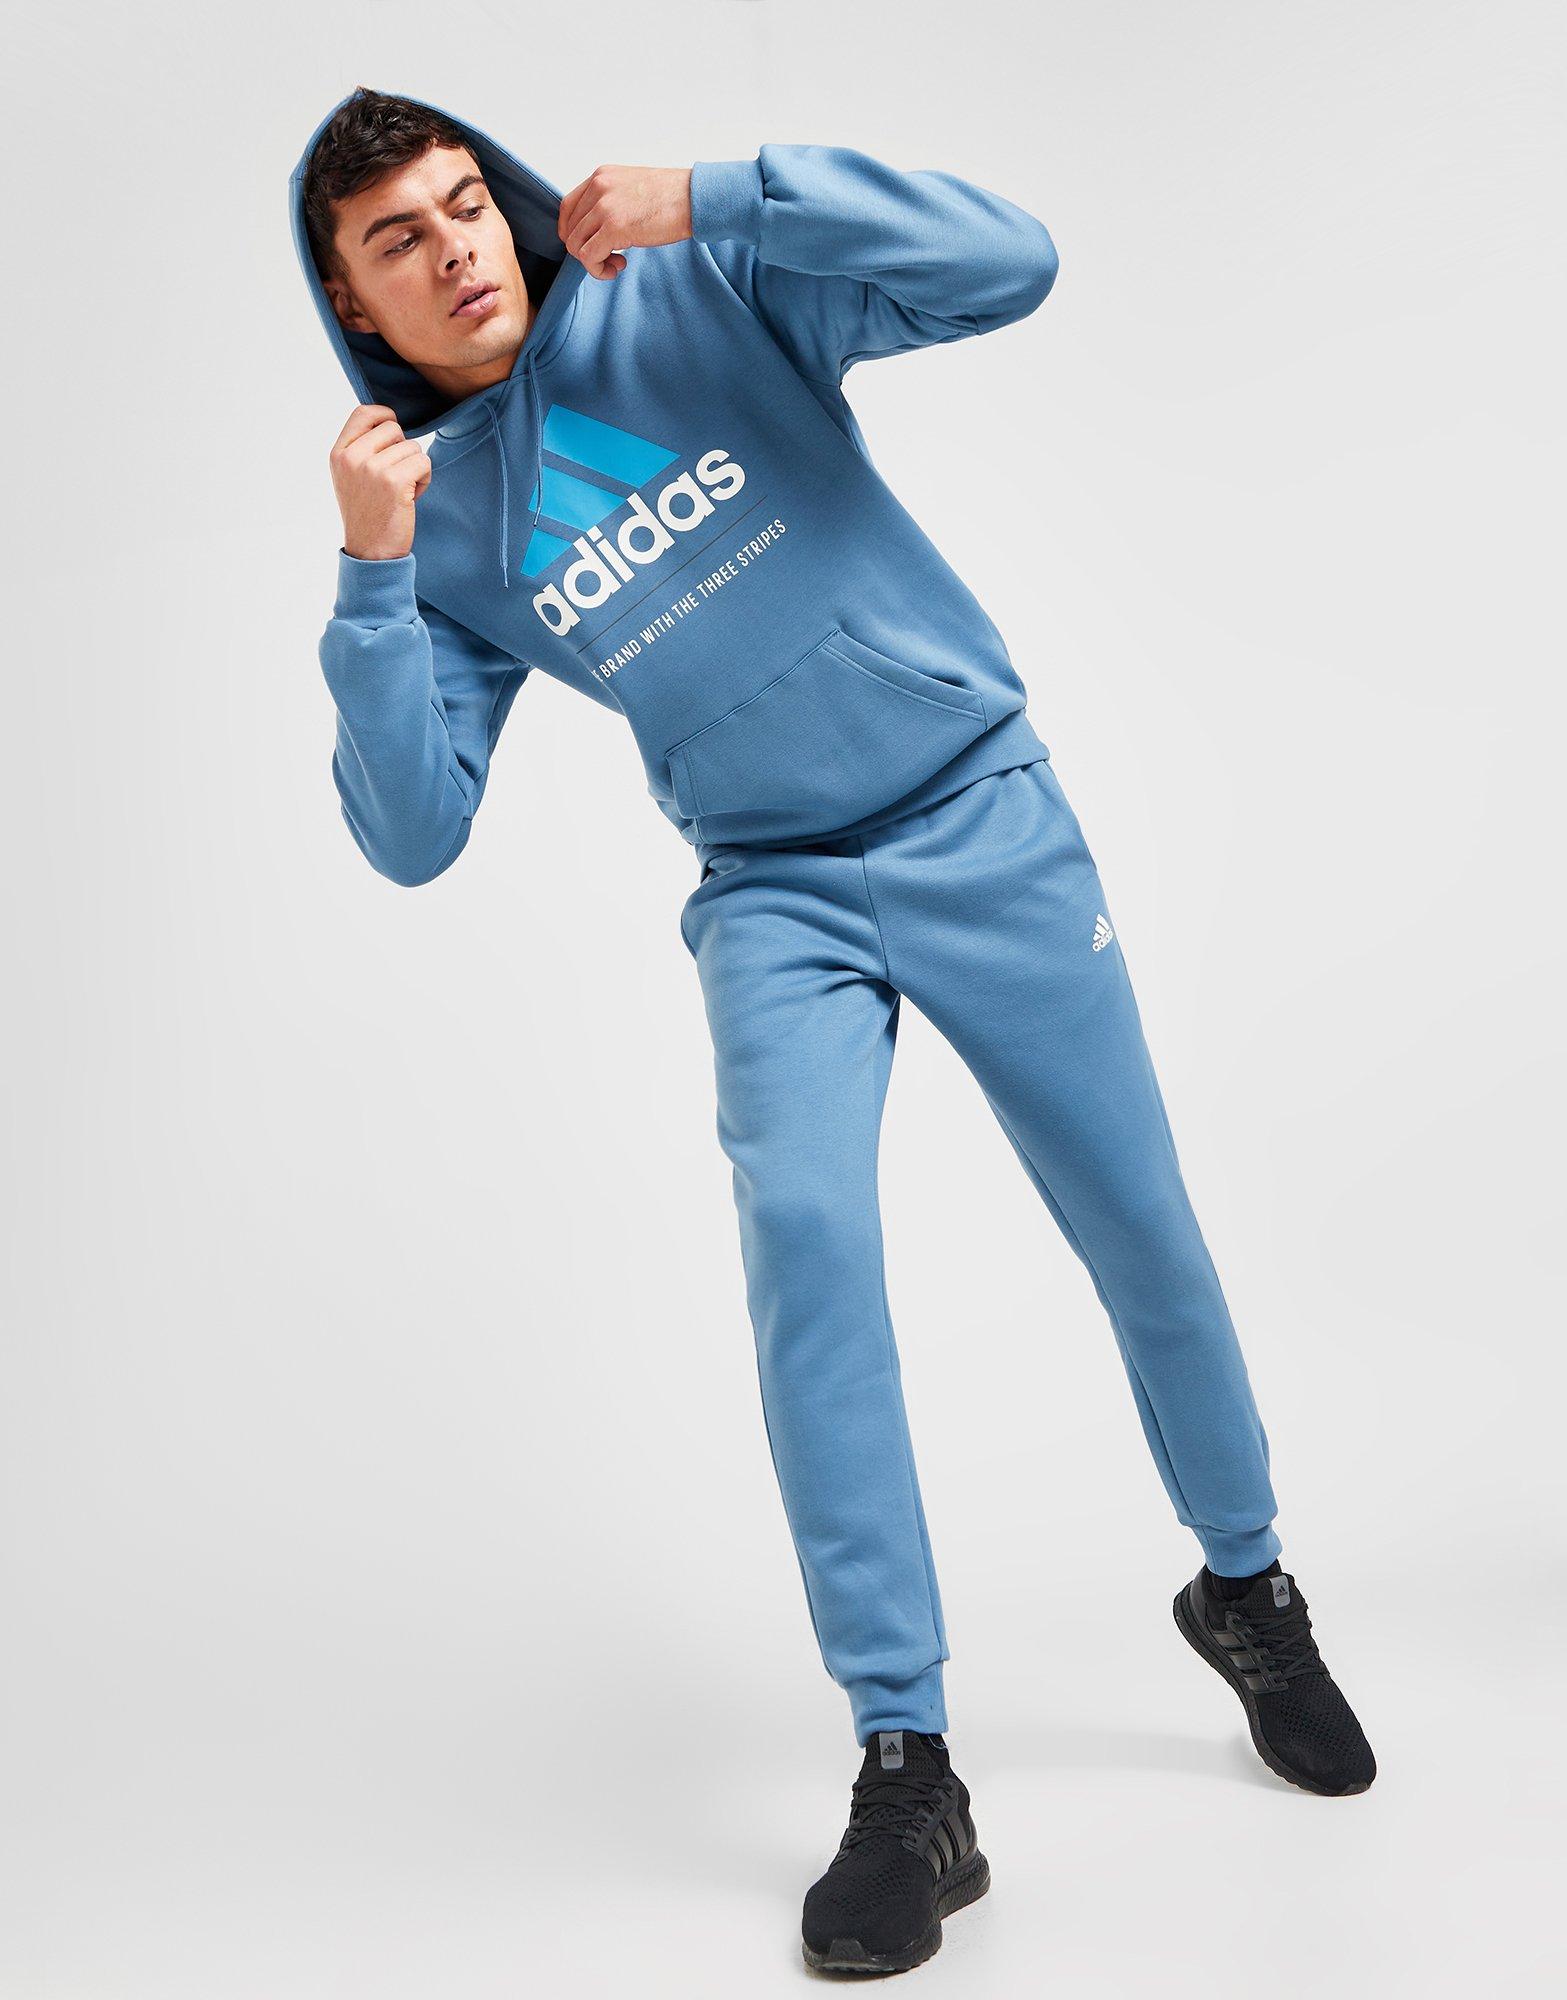 Ensemble jogging Adidas - Adidas - 12 mois